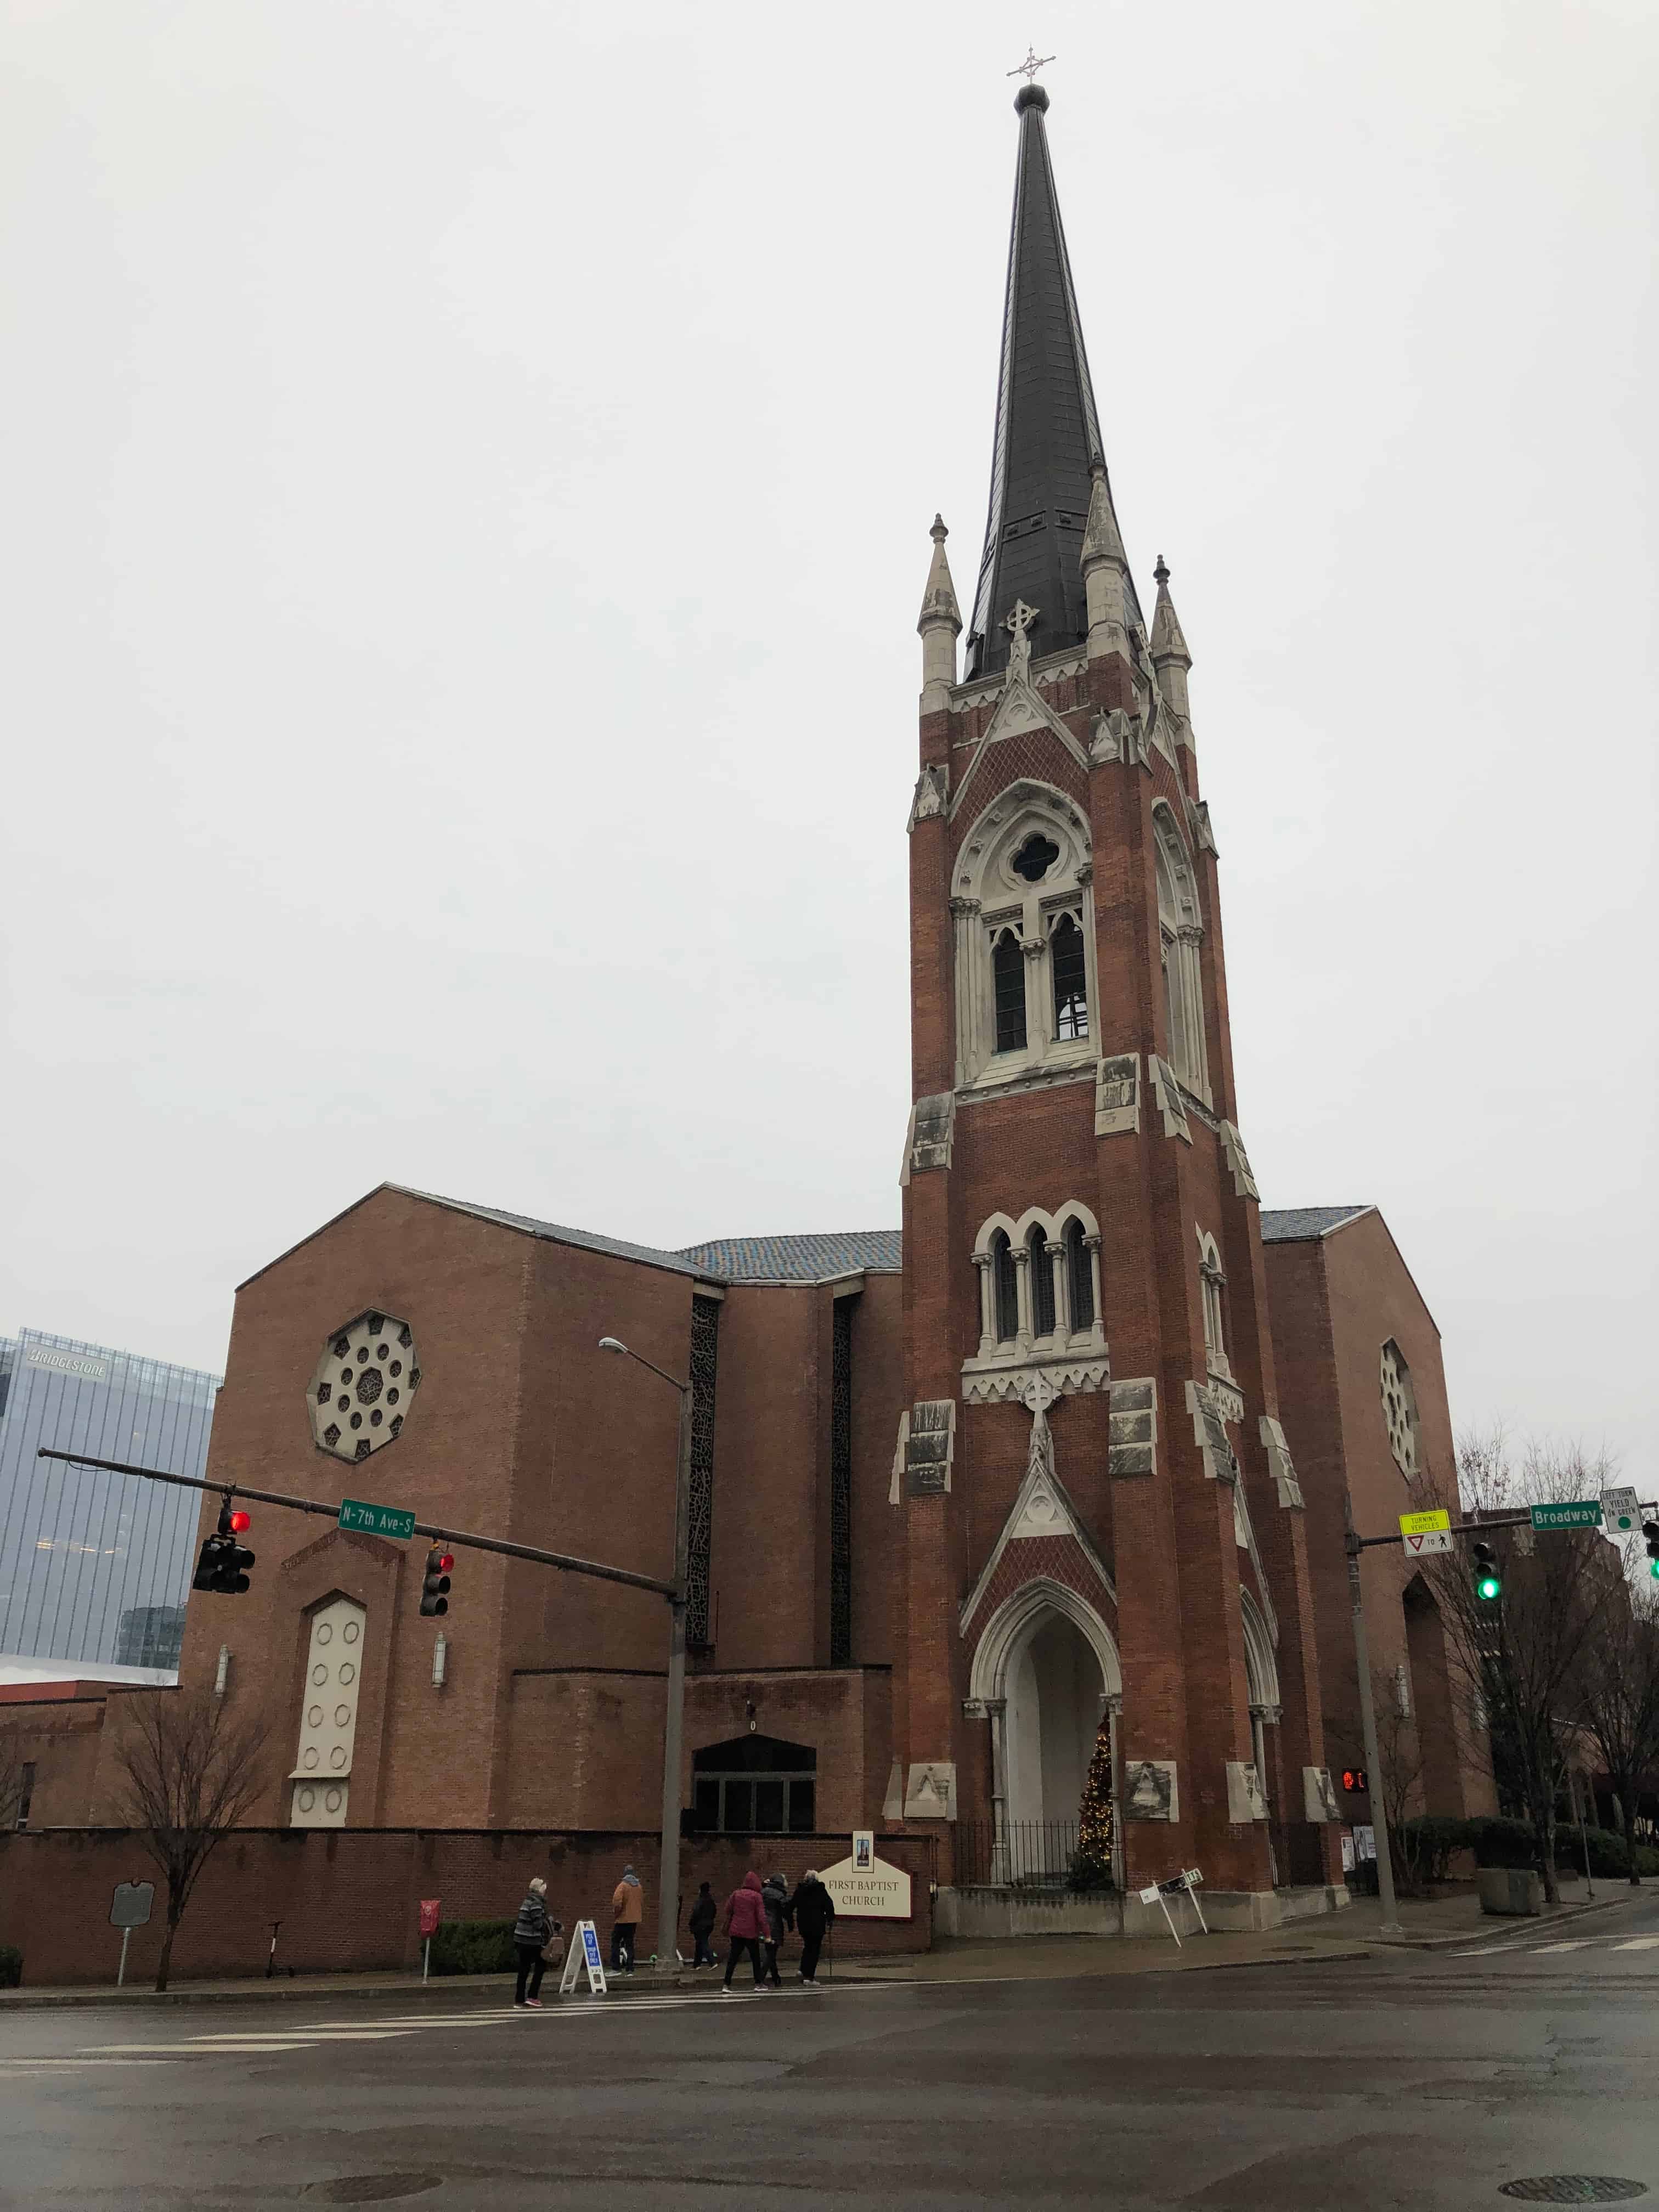 Nashville First Baptist Church in Nashville, Tennessee